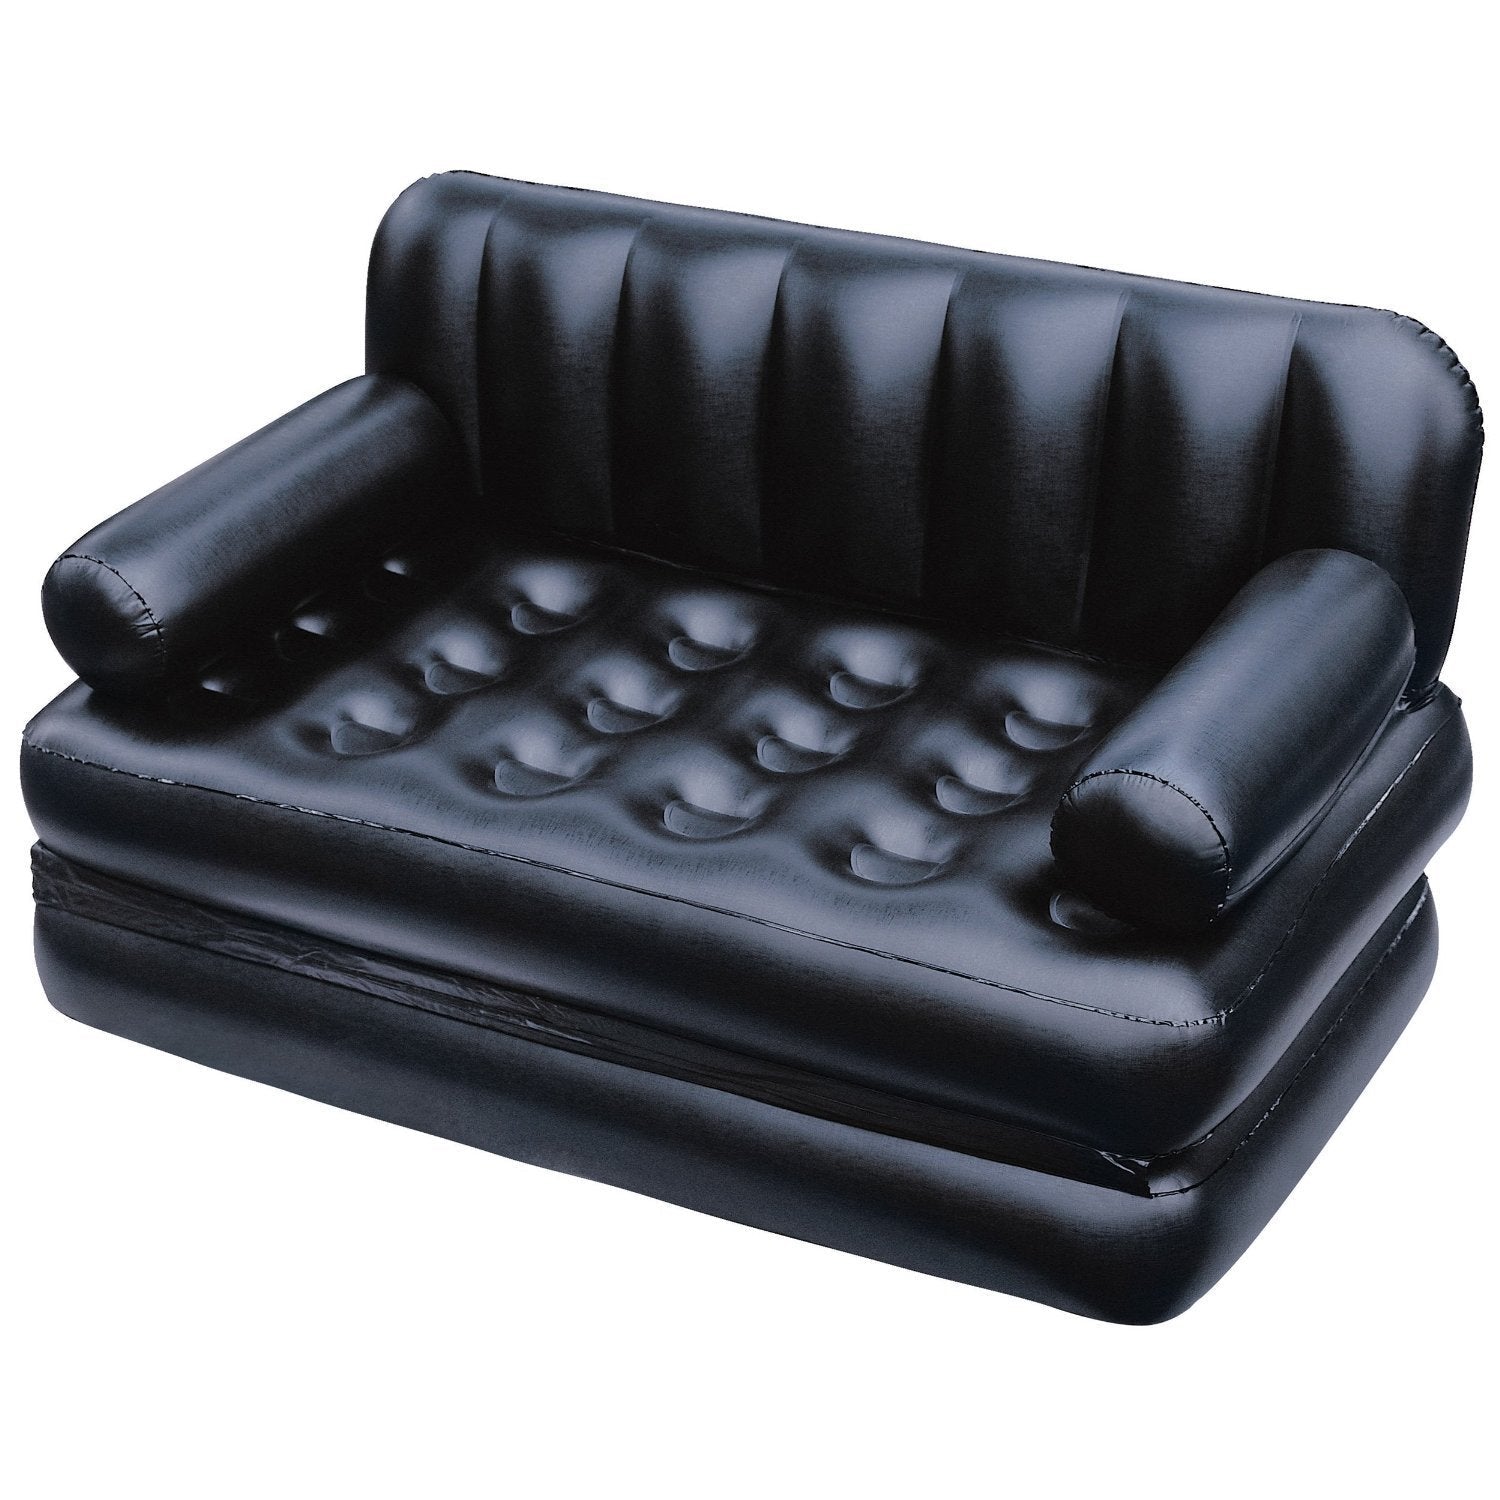 Pals & Co™ - 5 in 1 Multipurpose Sofa